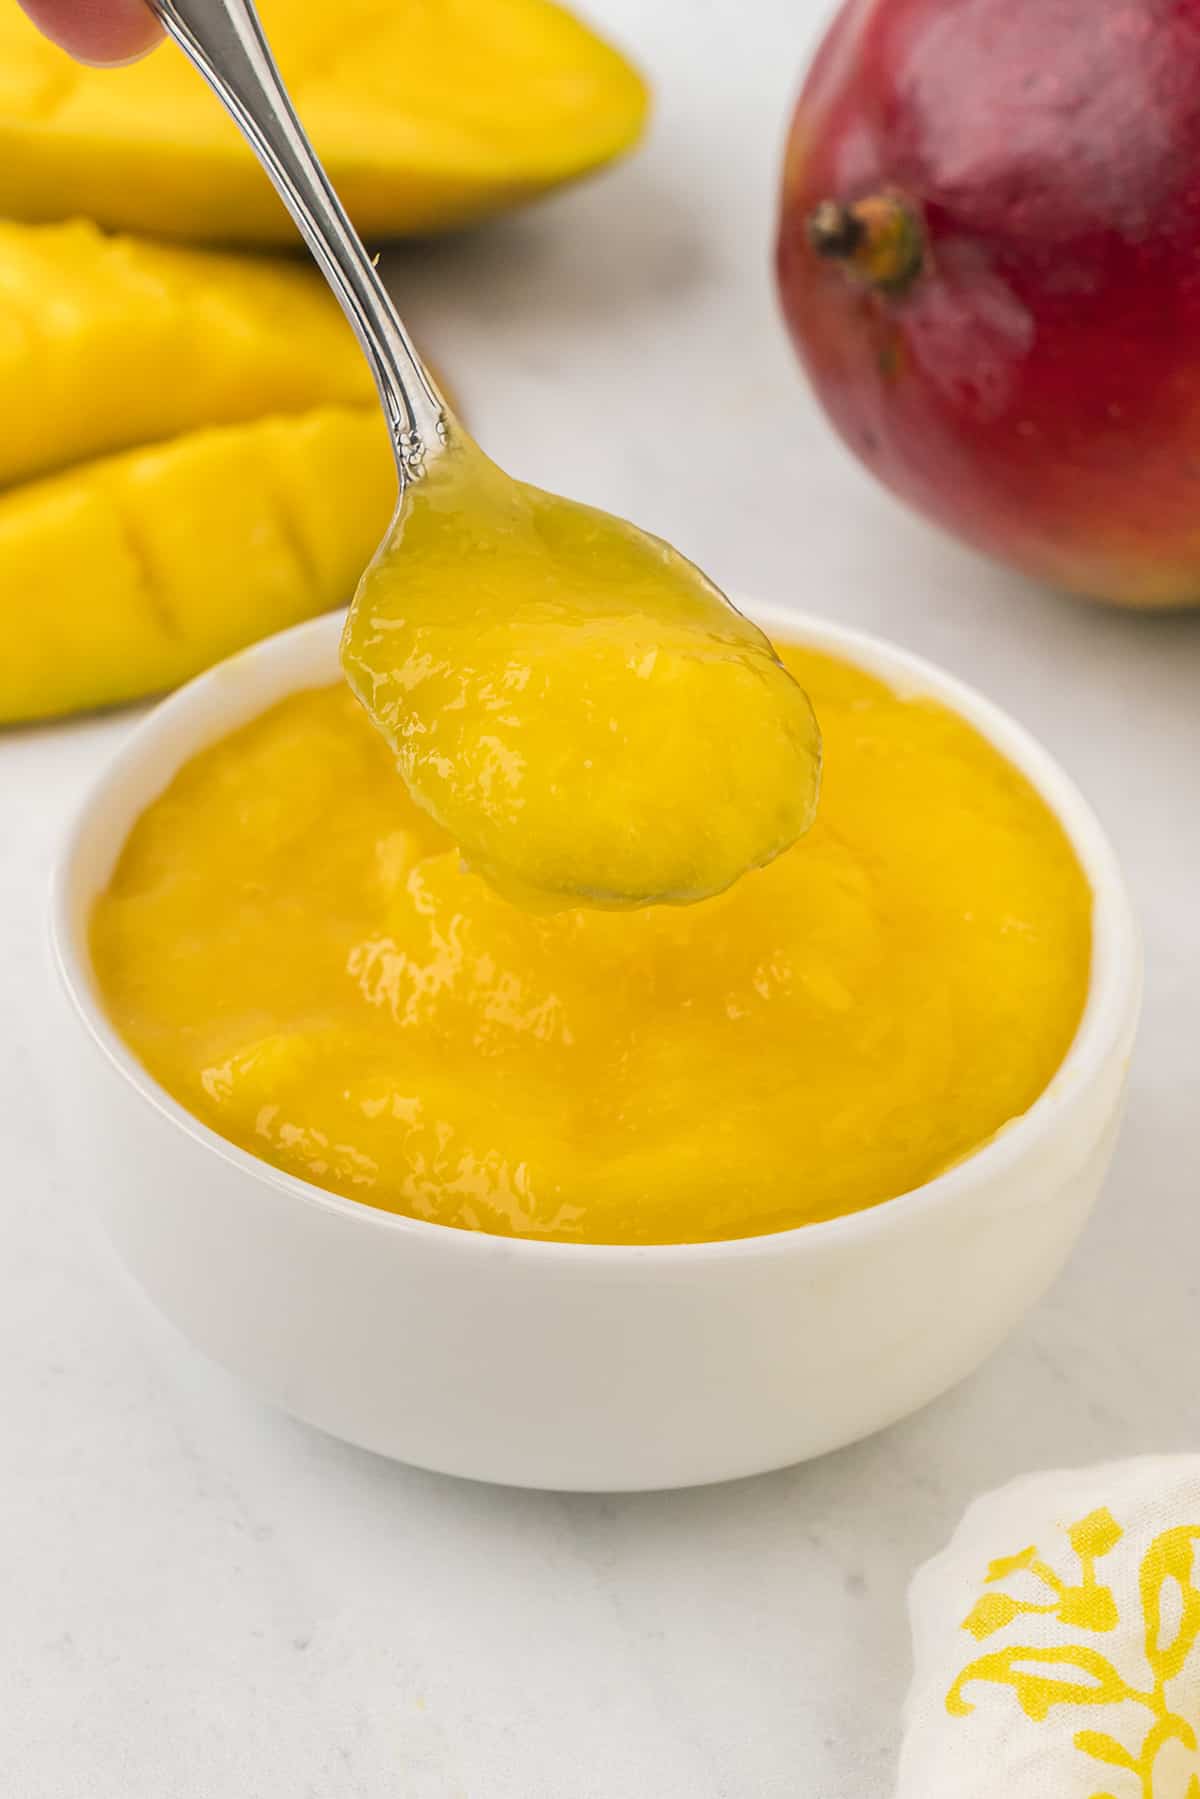 Mango puree in small white bowl.